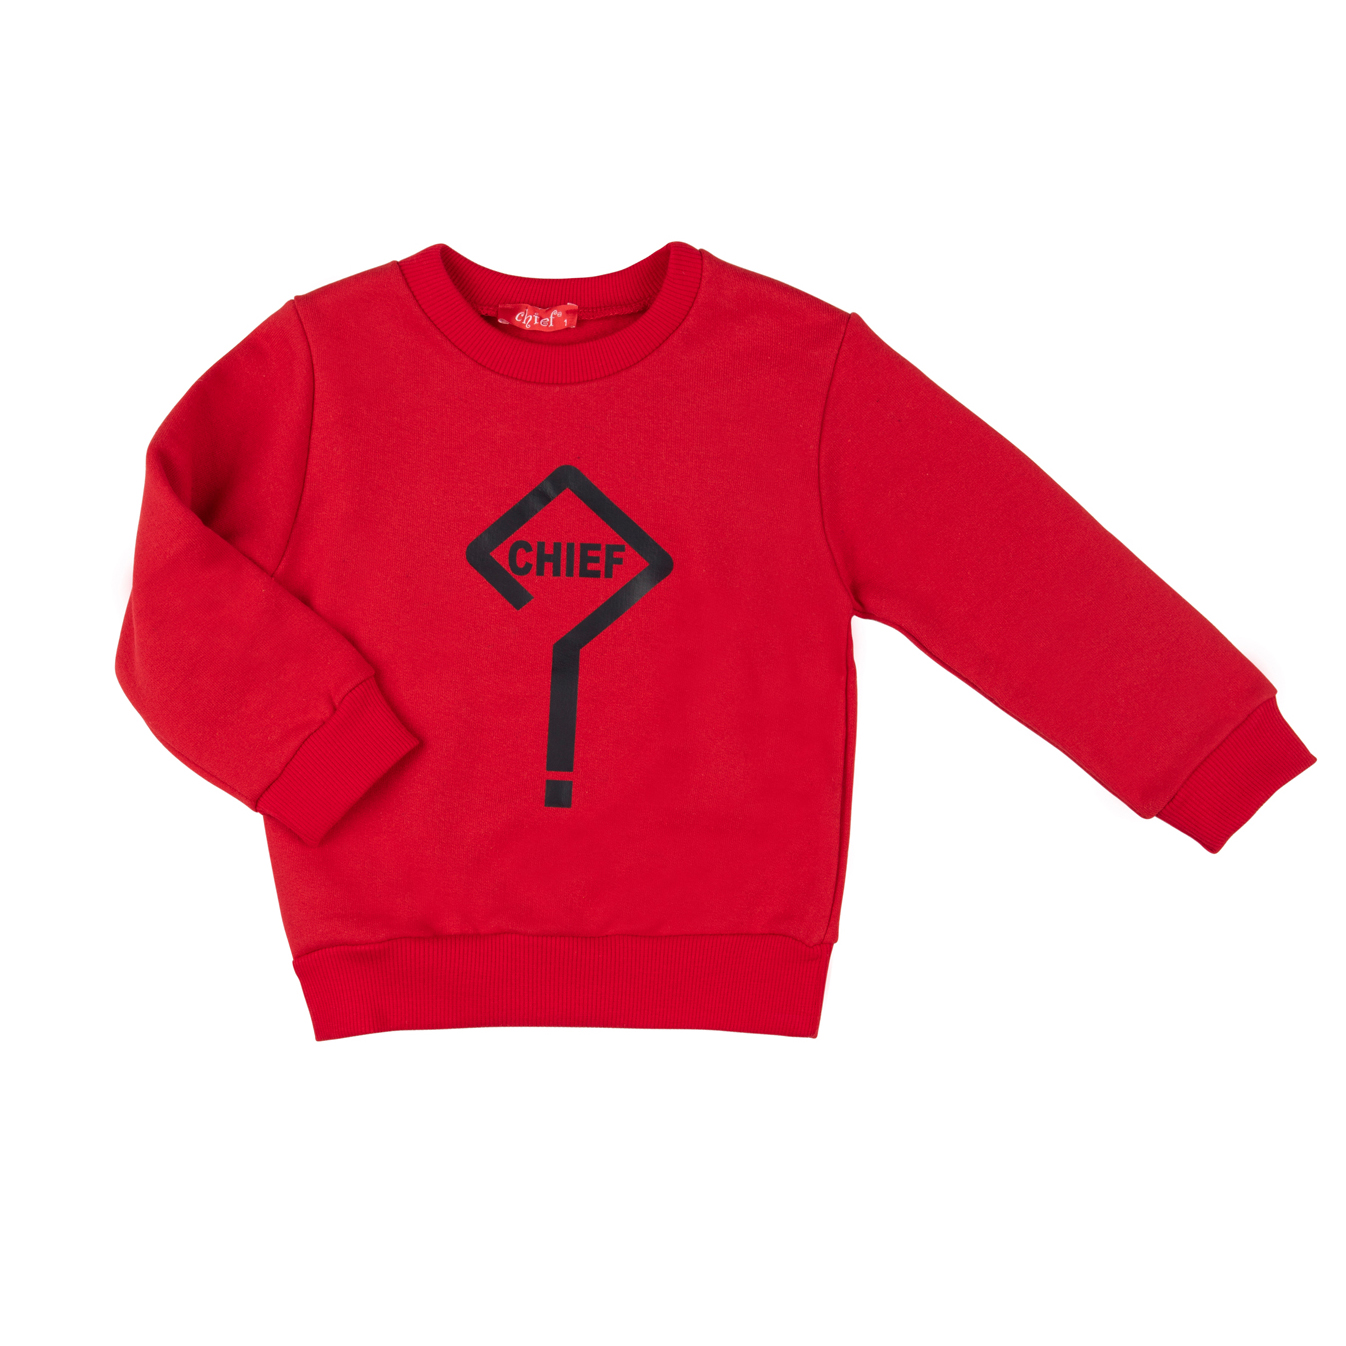 Μπεμπέ χειμερινή μπλούζα για αγόρι κόκκινη με τύπωμα εμπρός ερωτηματικό -12.3950K 1 ετών